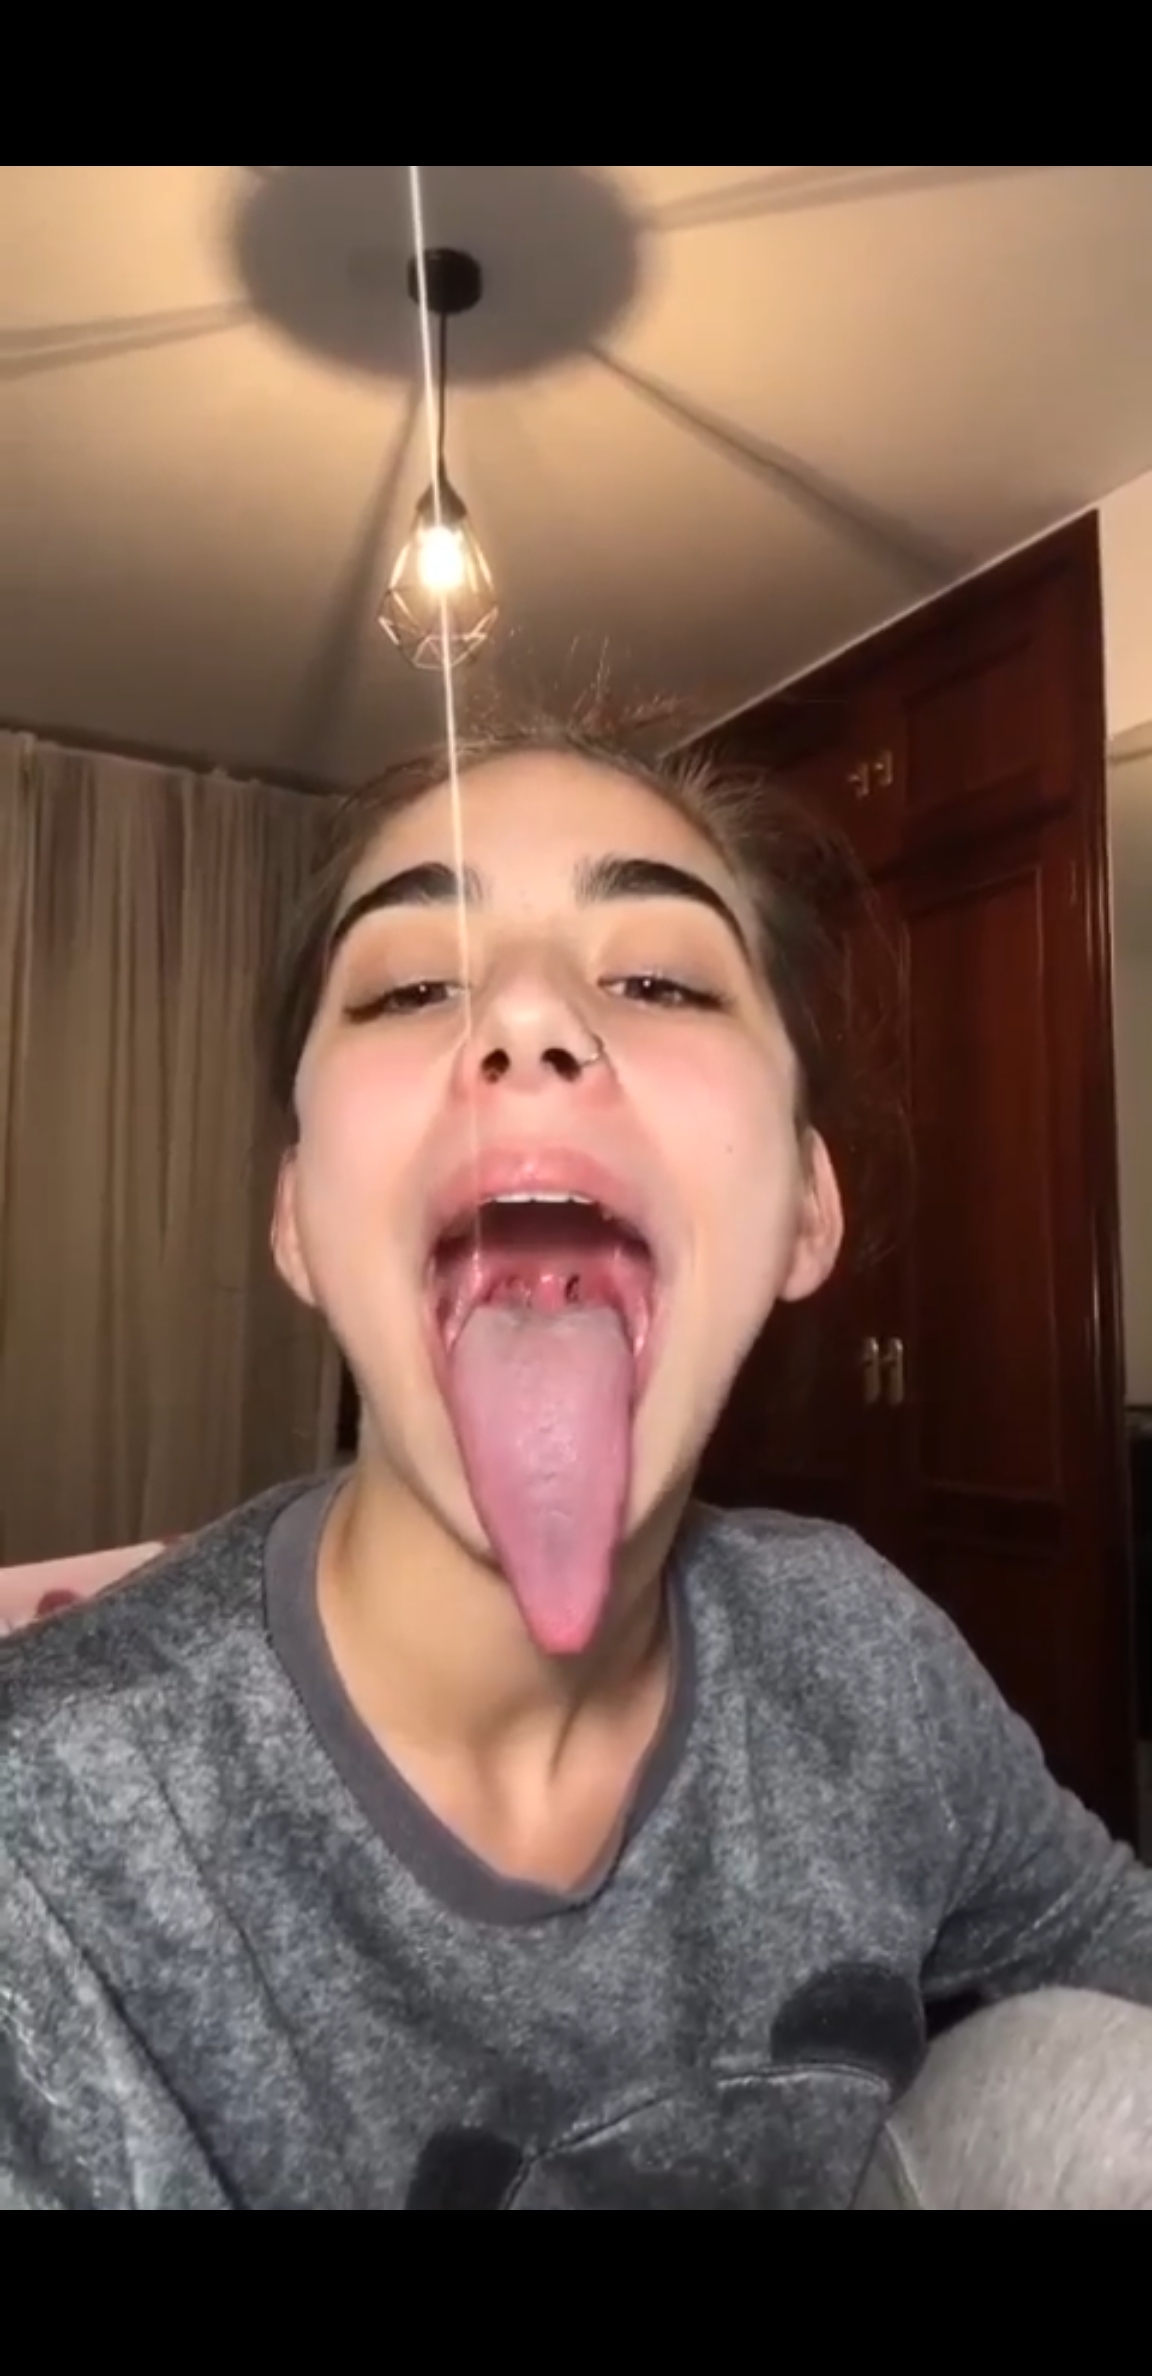 secx tongue